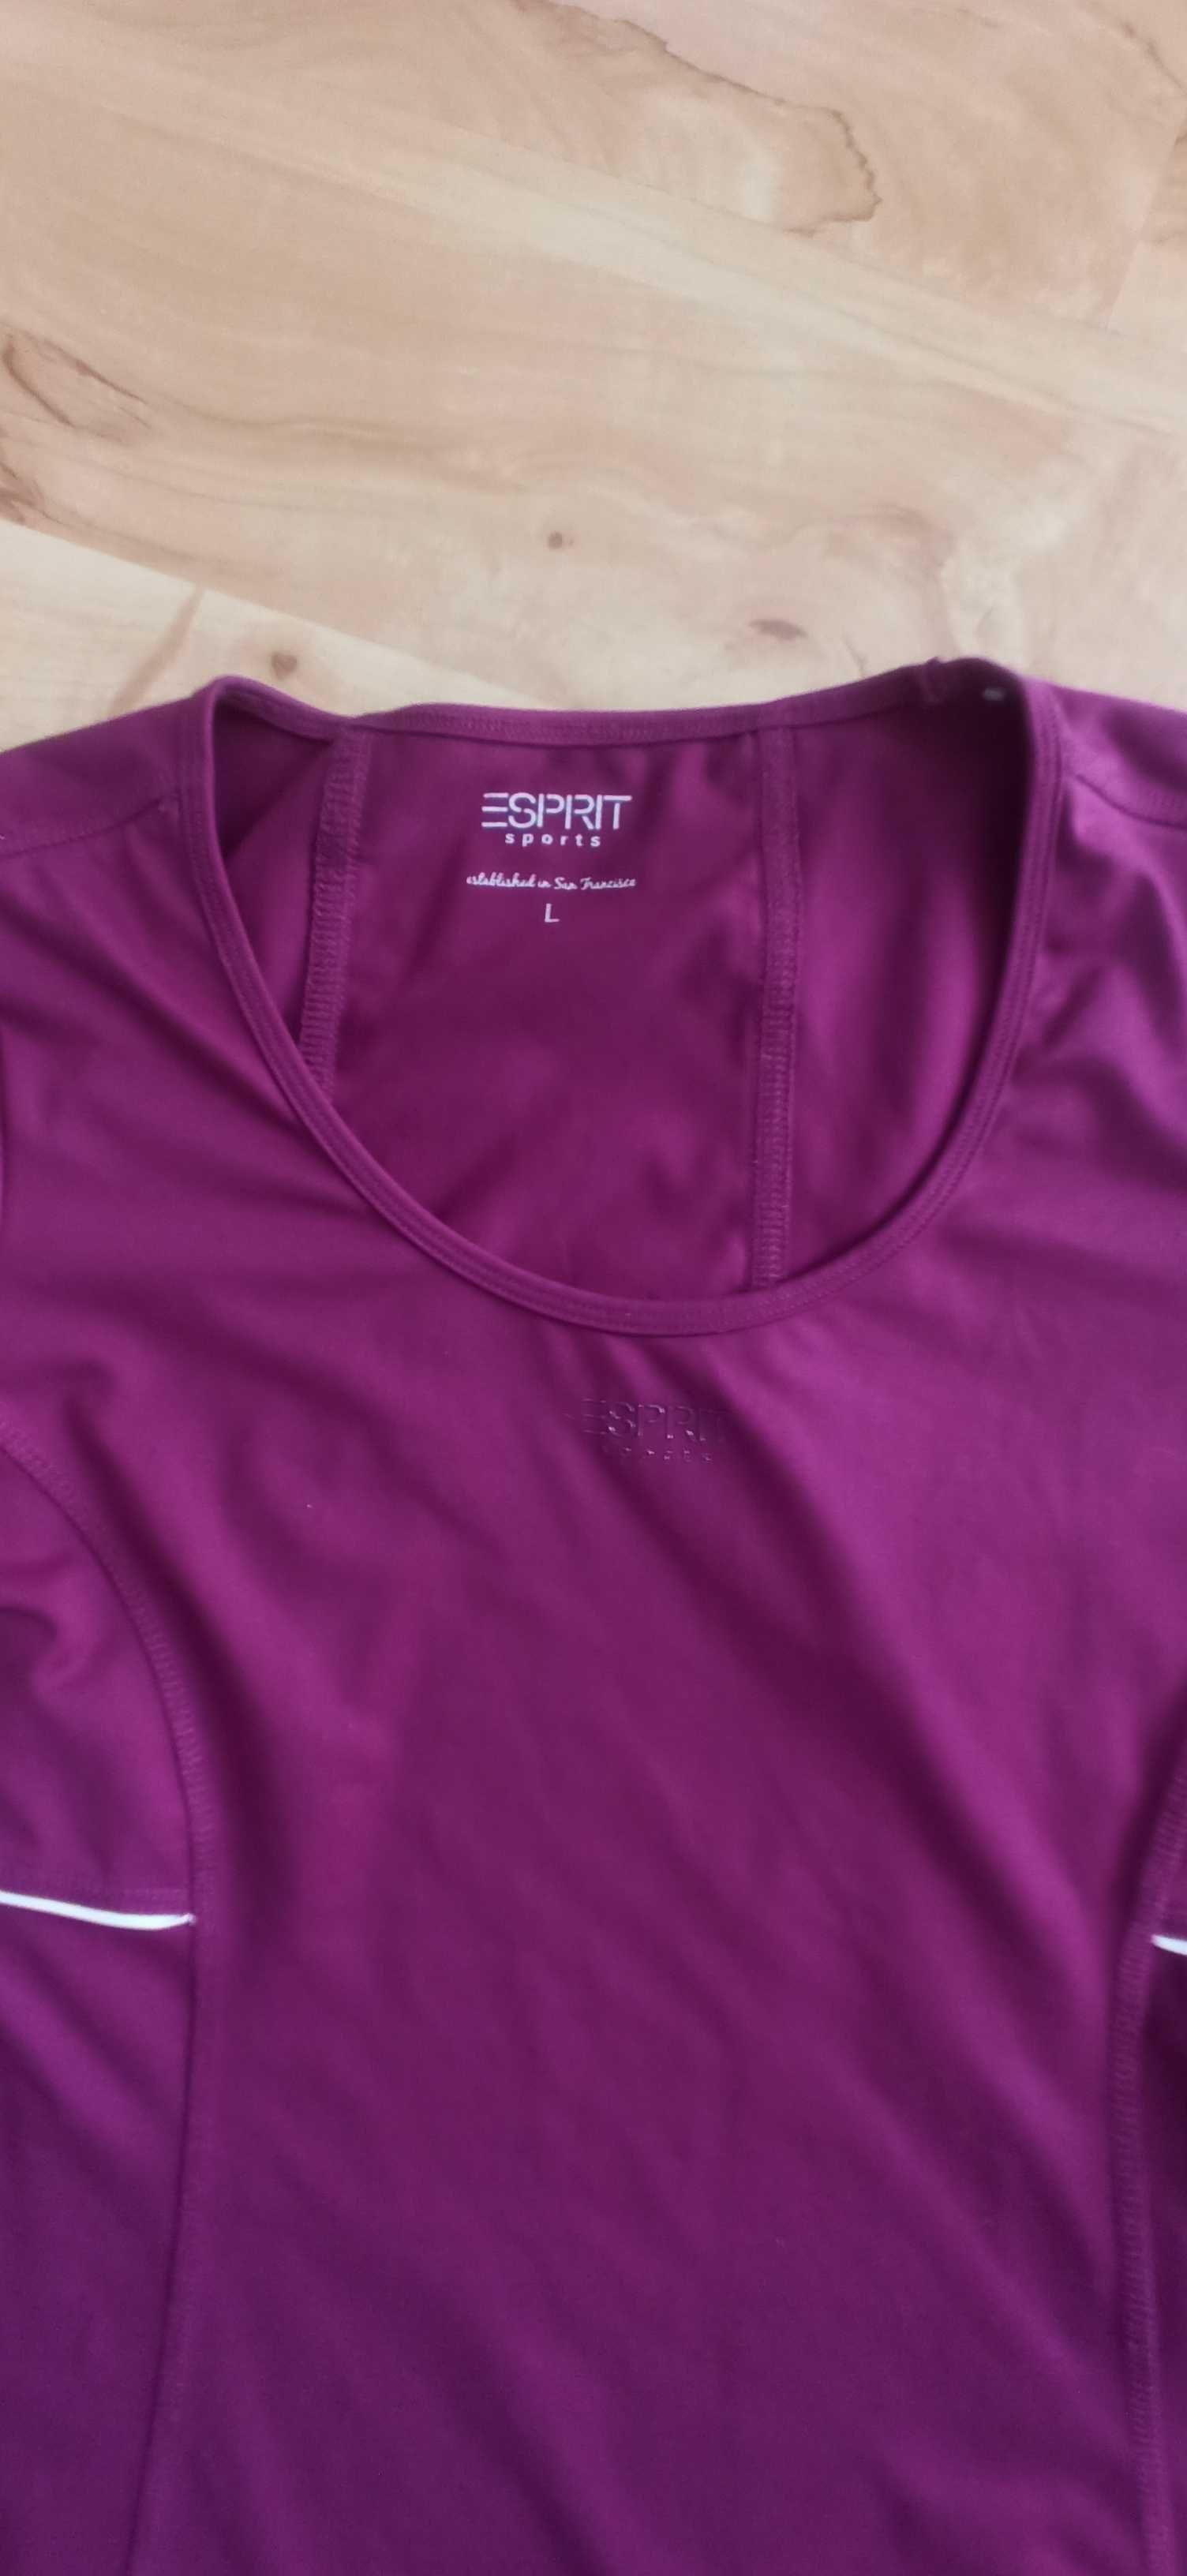 Koszulka sportowa Esprit